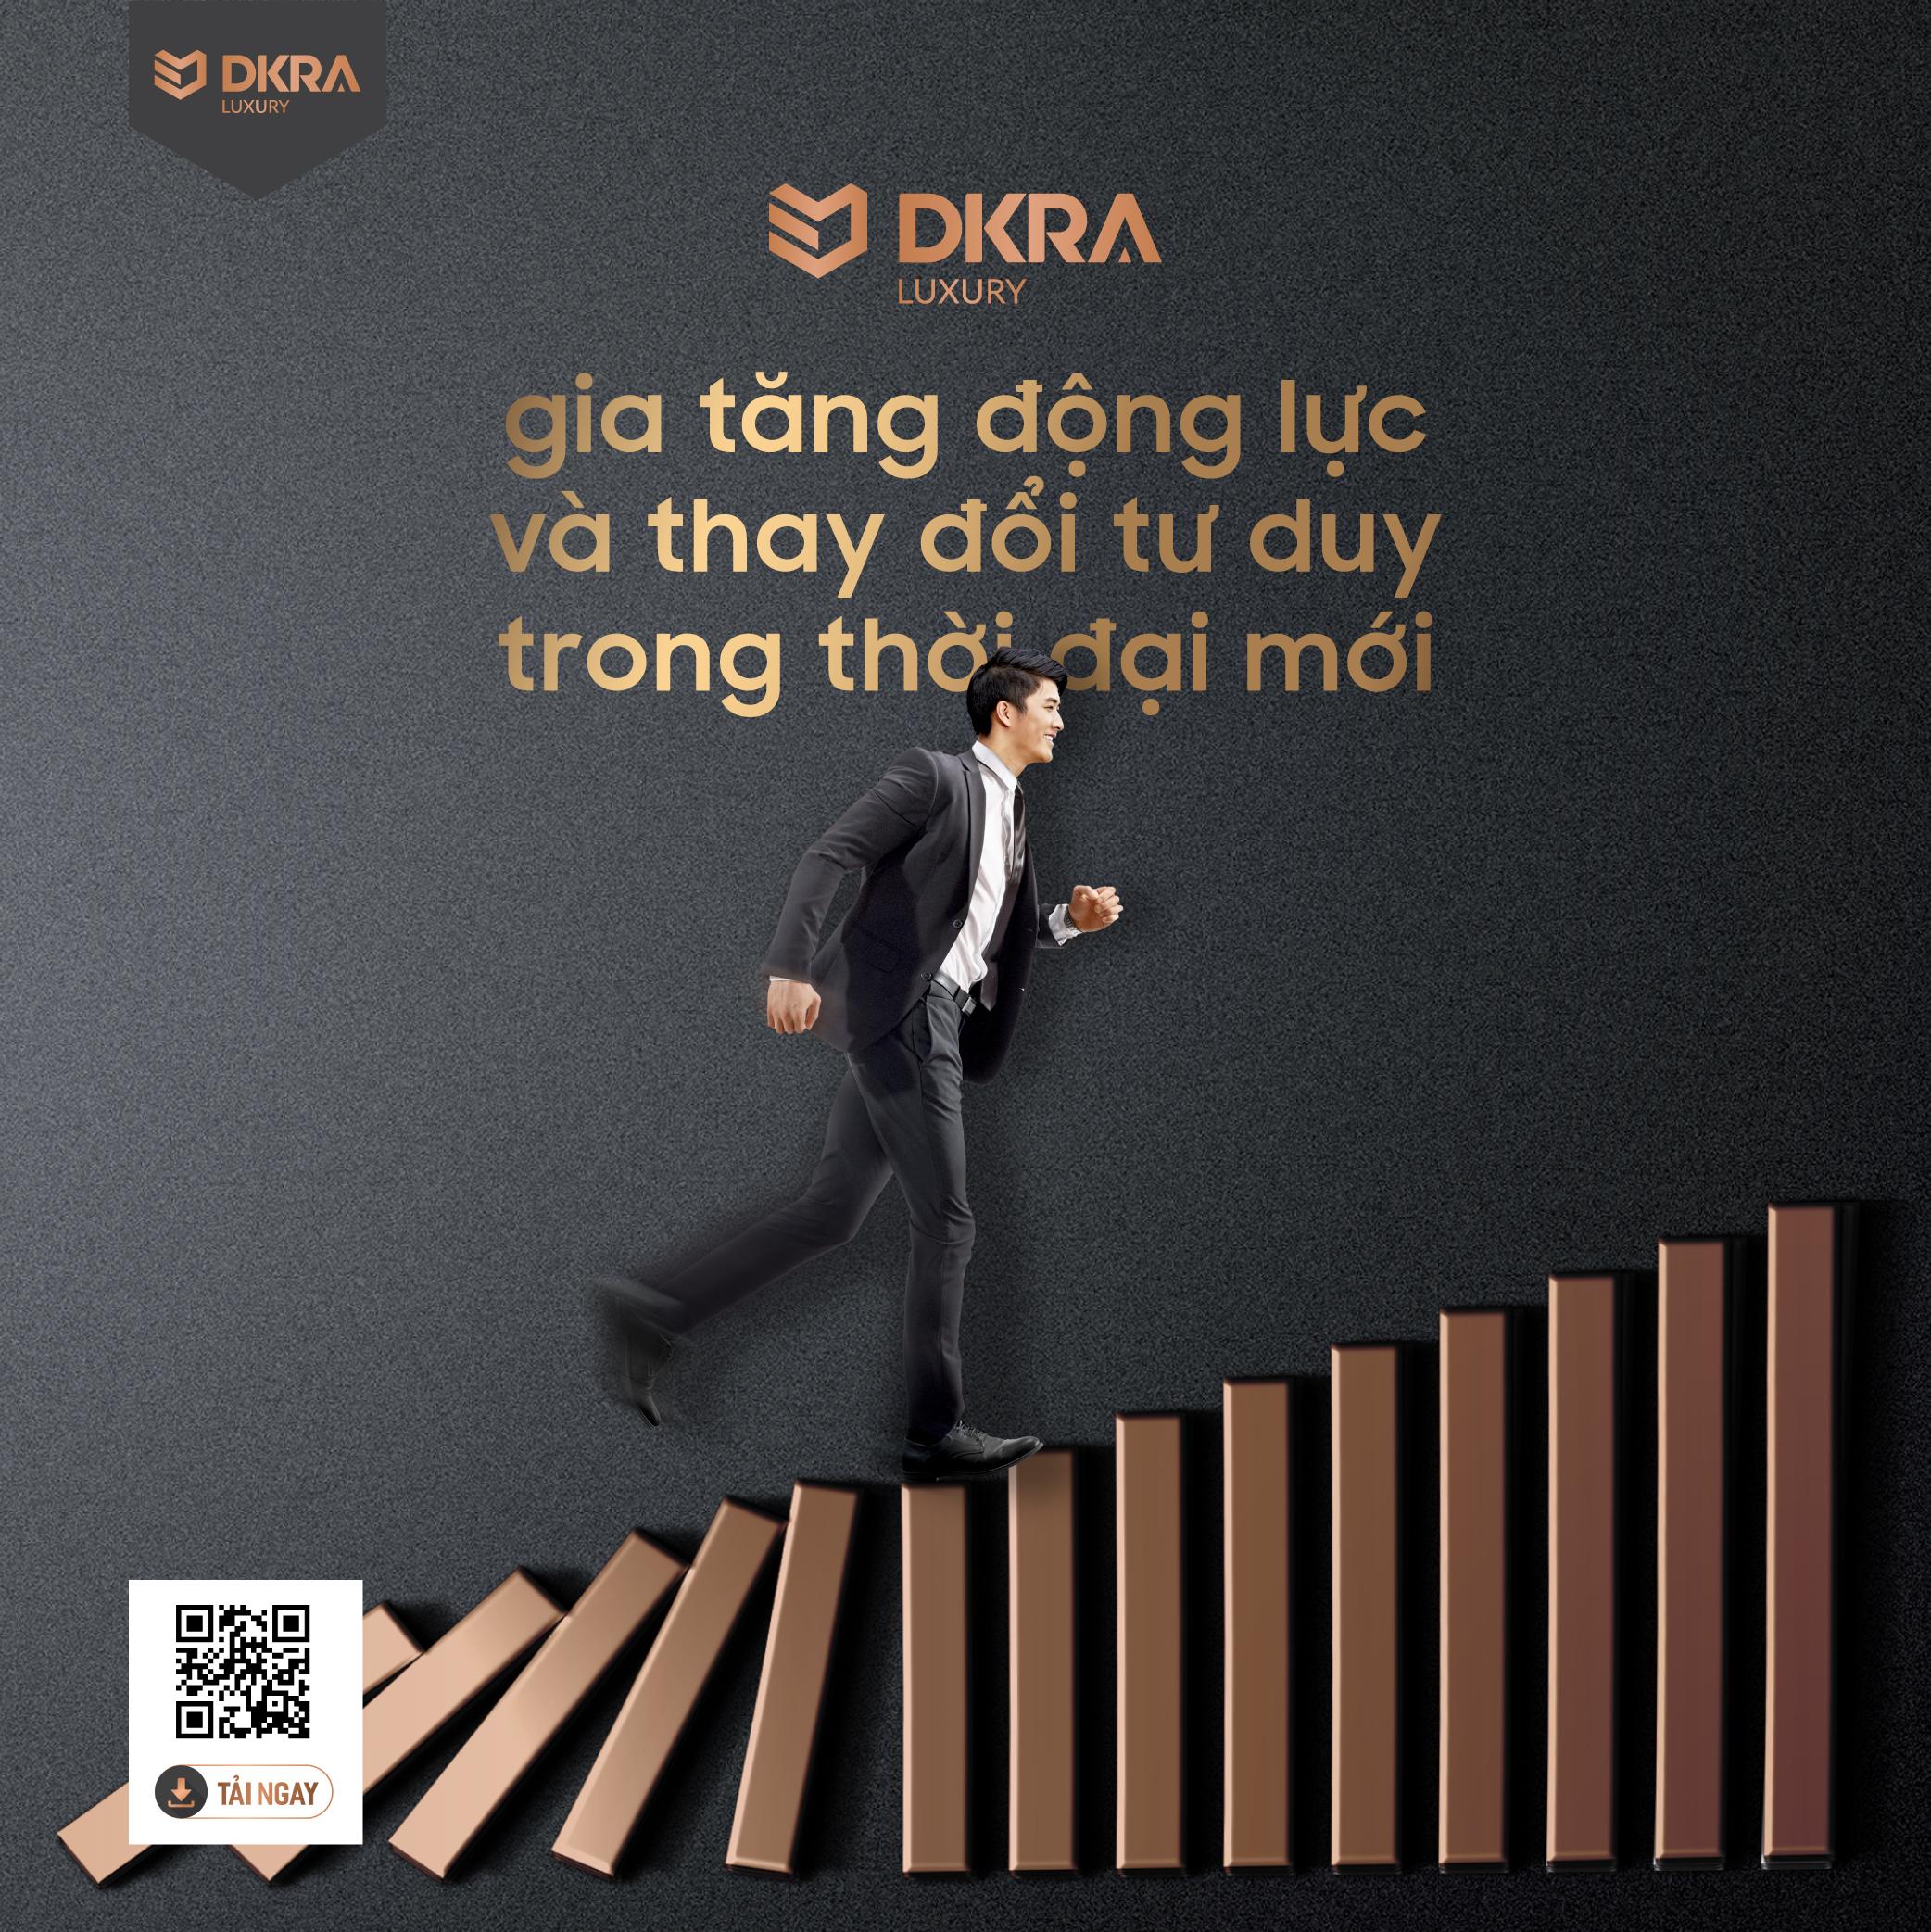 DKRA Luxury gia tăng động lực và thay đổi tư duy trong thời đại mới 